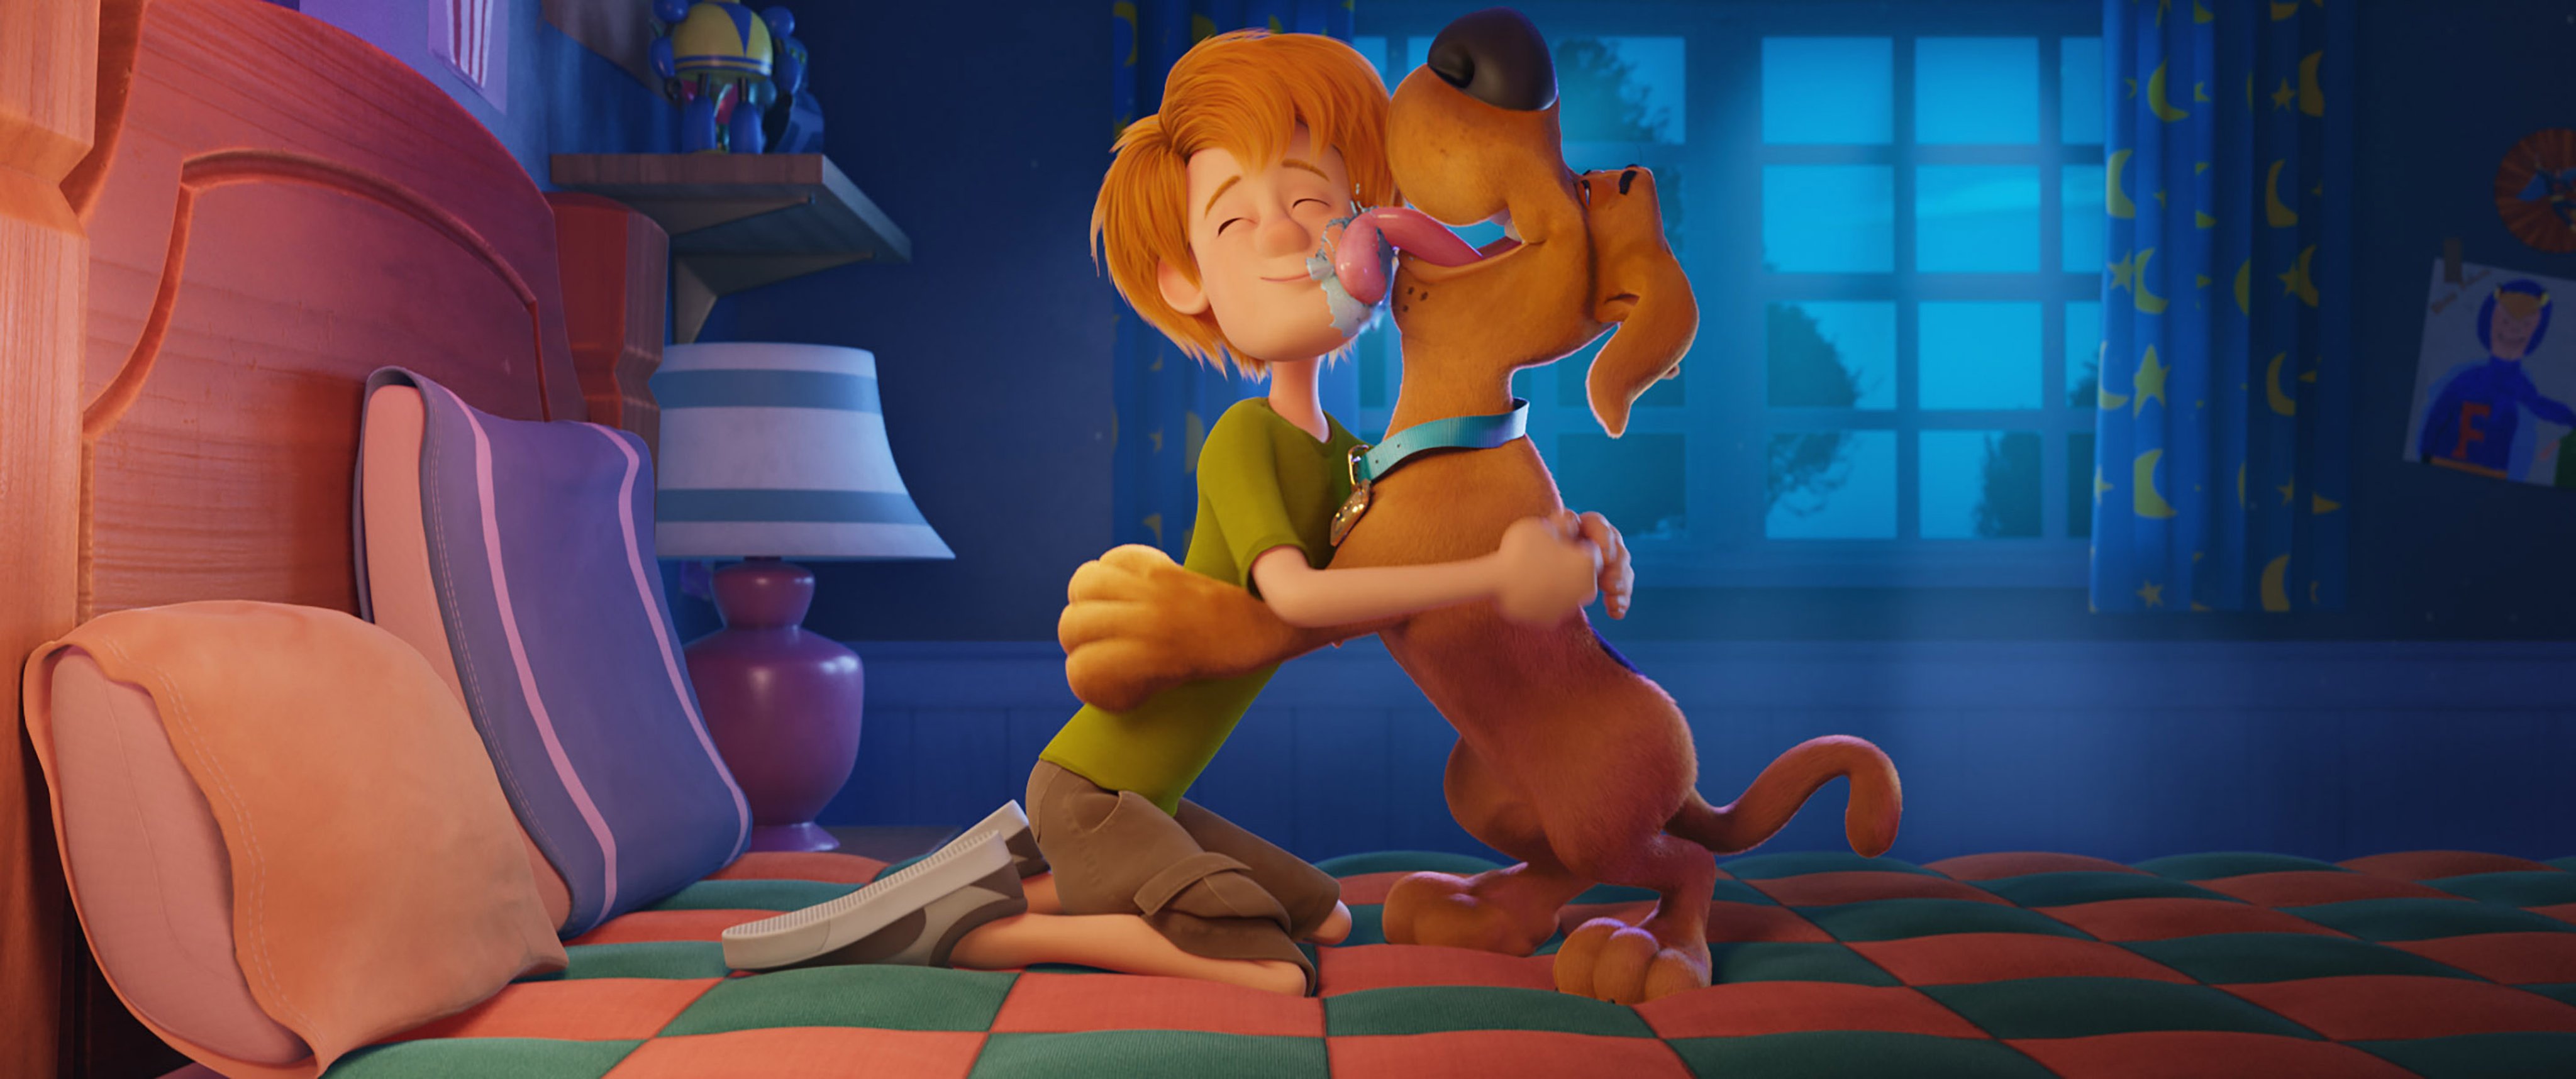 Velma, nova animação adulta de Scooby-Doo, ganha primeira imagem